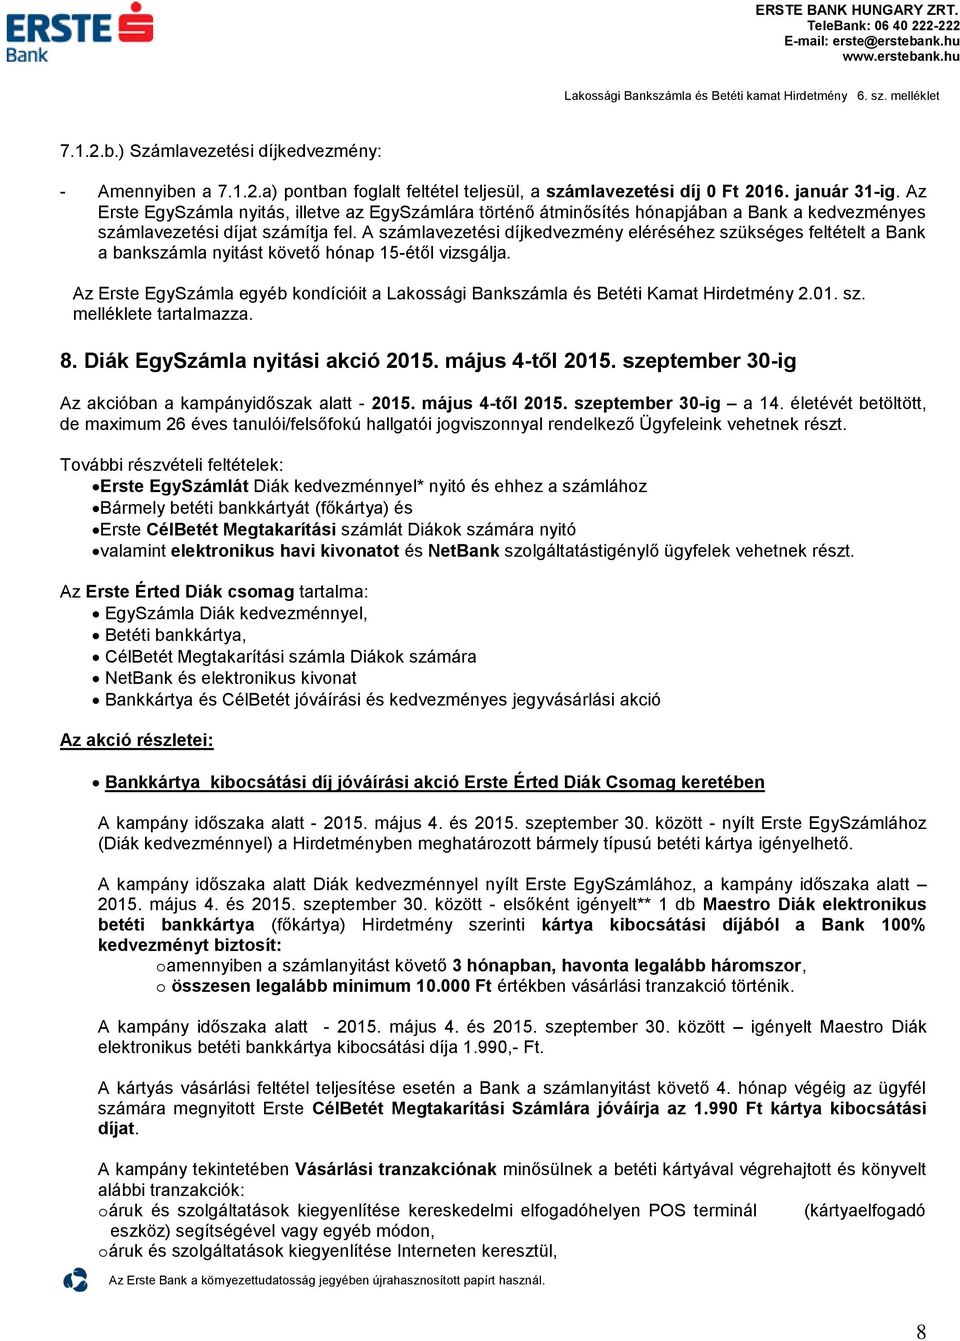 Az Erste Bank által meghirdetett Akciós ajánlatok lakossági ügyfelek  részére. Közzététel: január 20. Hatályos: PDF Ingyenes letöltés